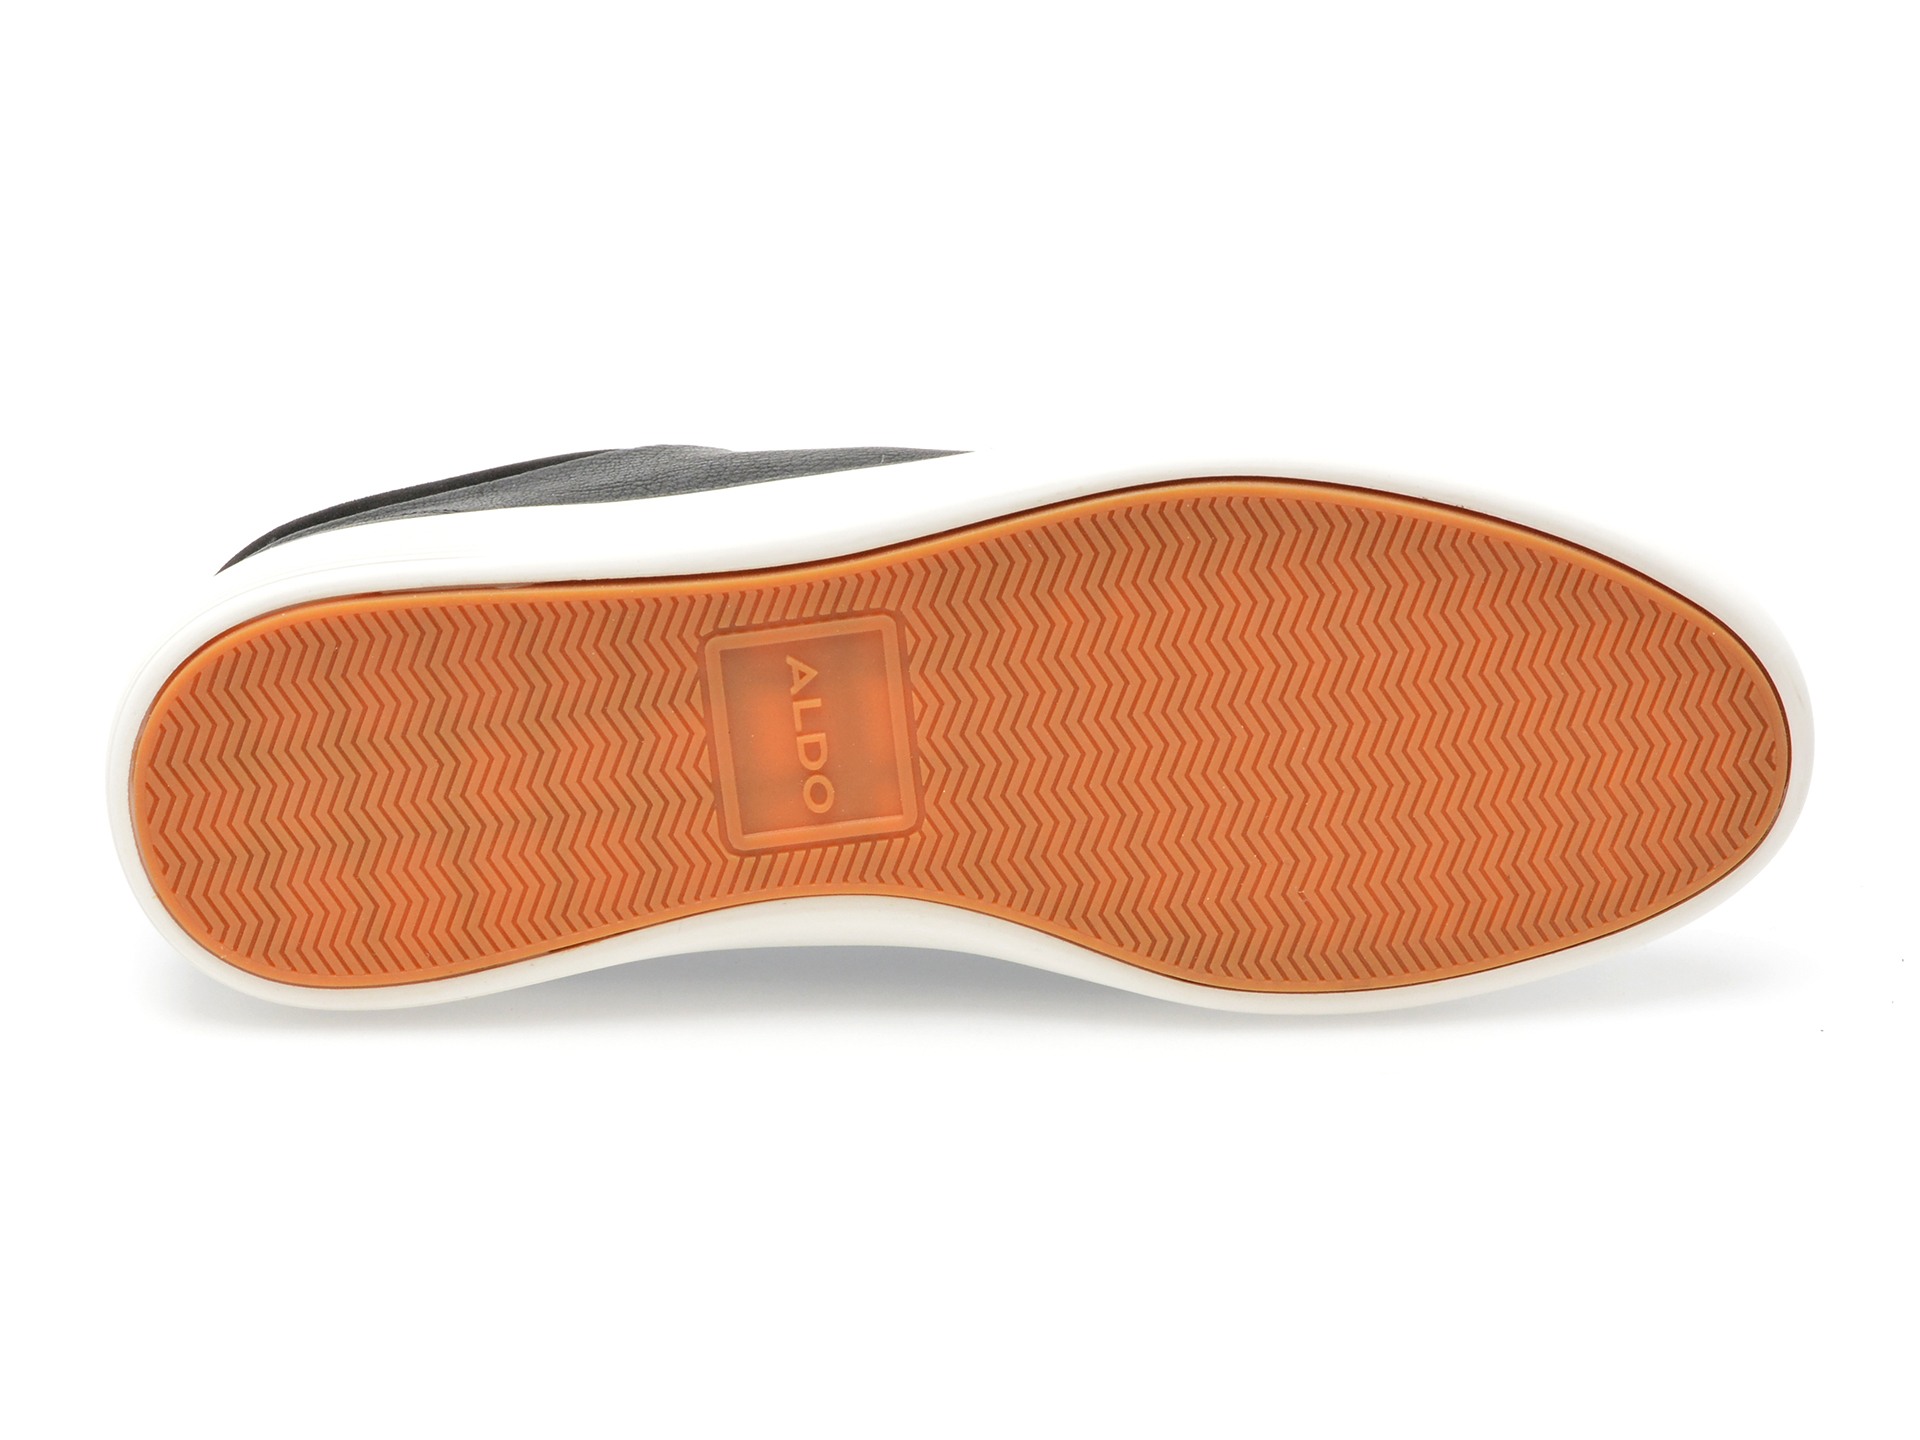 Pantofi casual ALDO negri, FINESPEC001, din piele ecologica